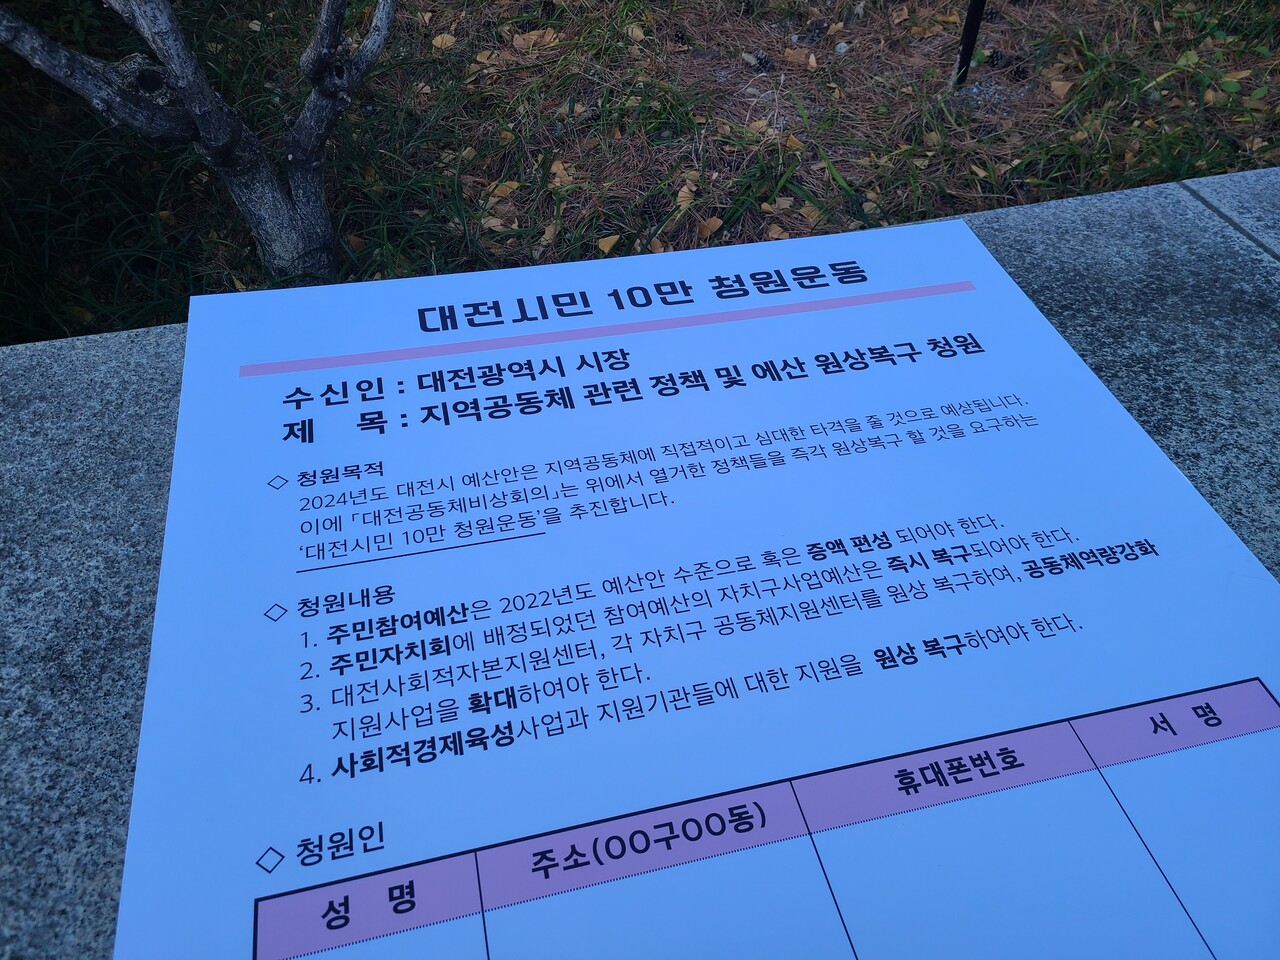 대전공동체비상회의가 주민자치와 공동체 정책 정상화, 예산 삭감 철회를 요구하는 10만 시민 청원운동을 추진한다. 한지혜 기자.